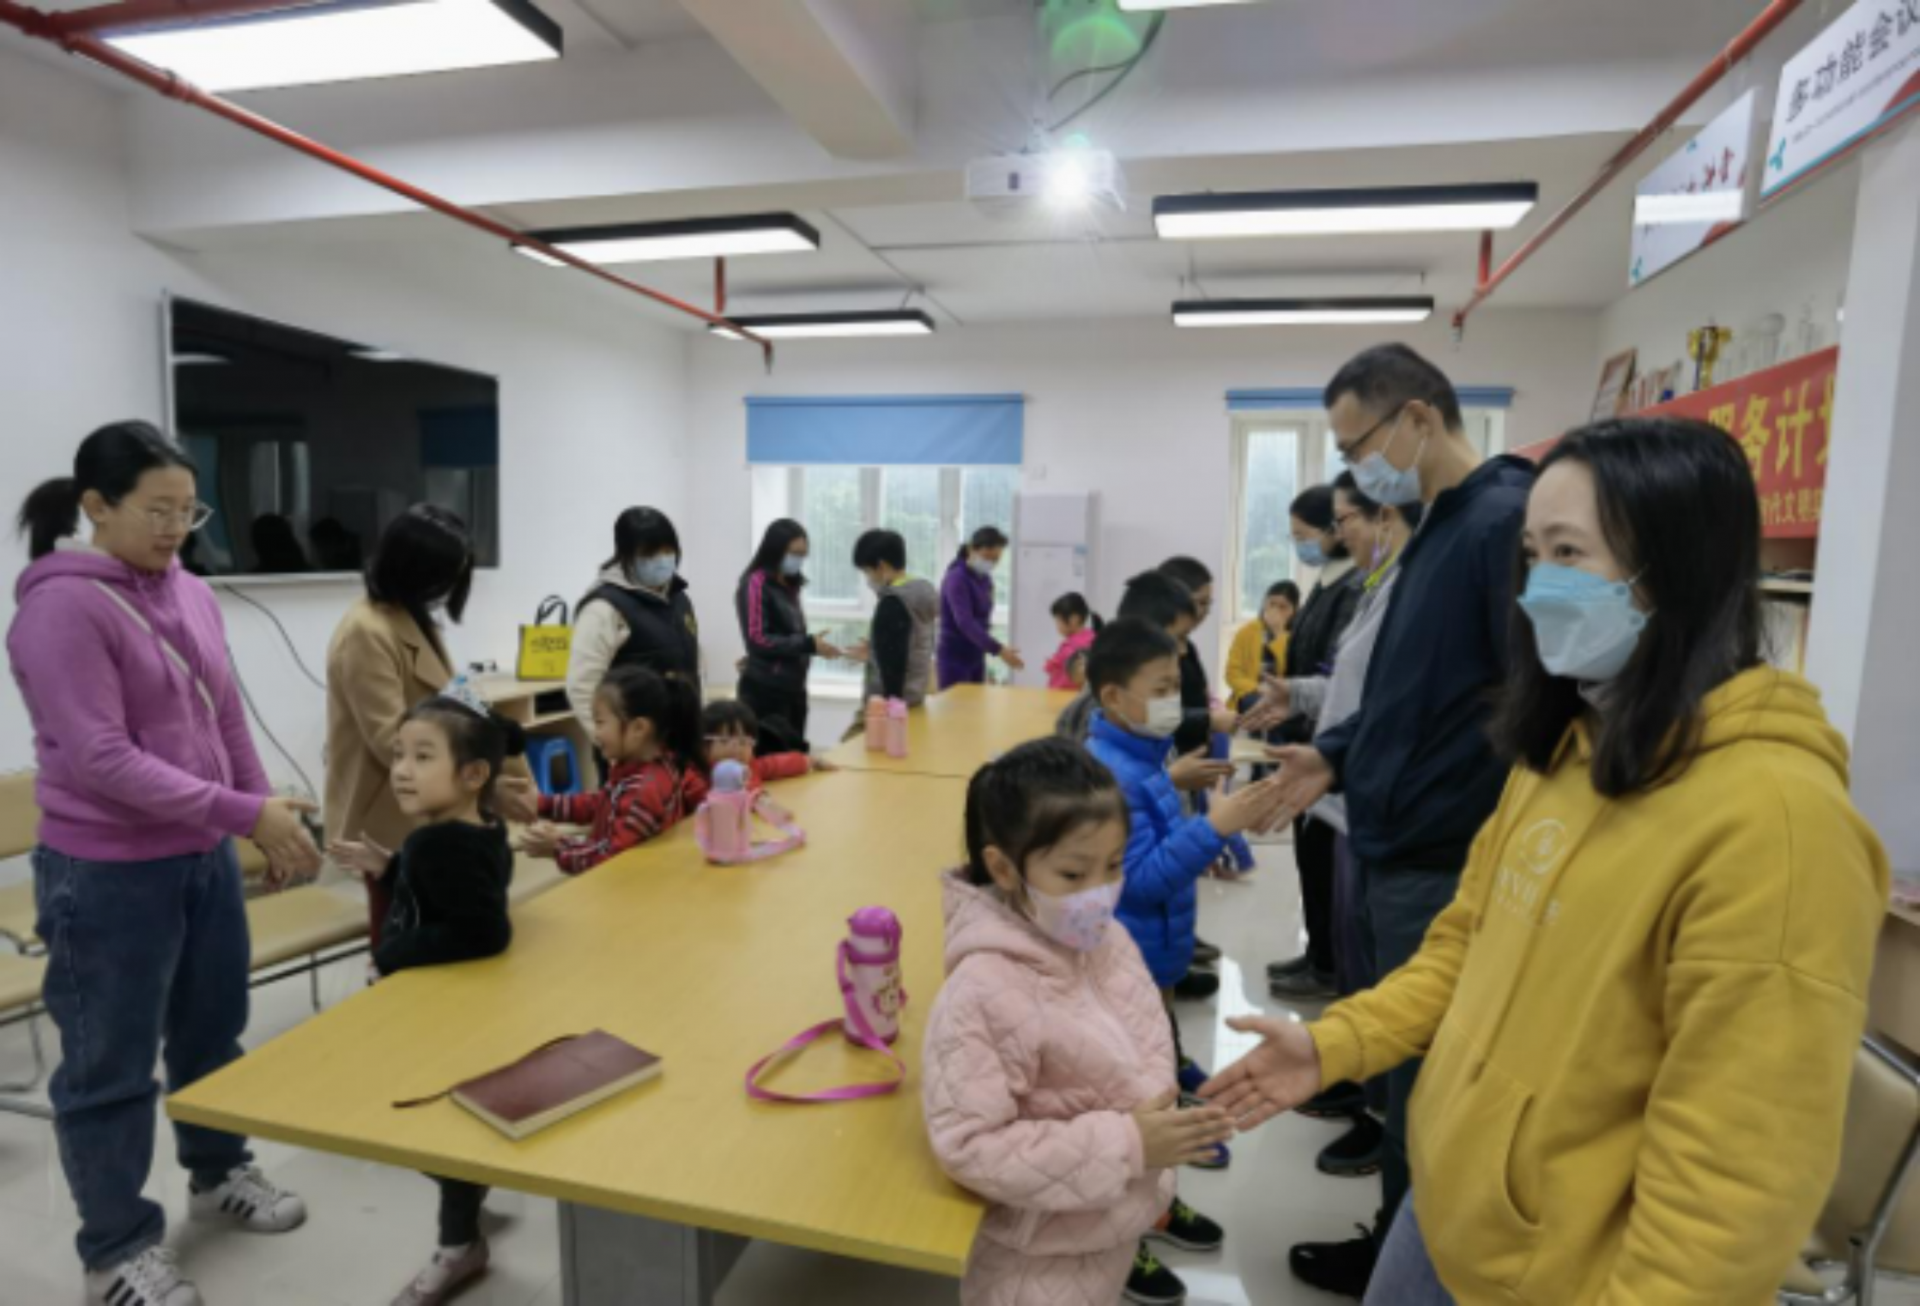 桂园街道大塘龙社区举办亲子园艺体验活动